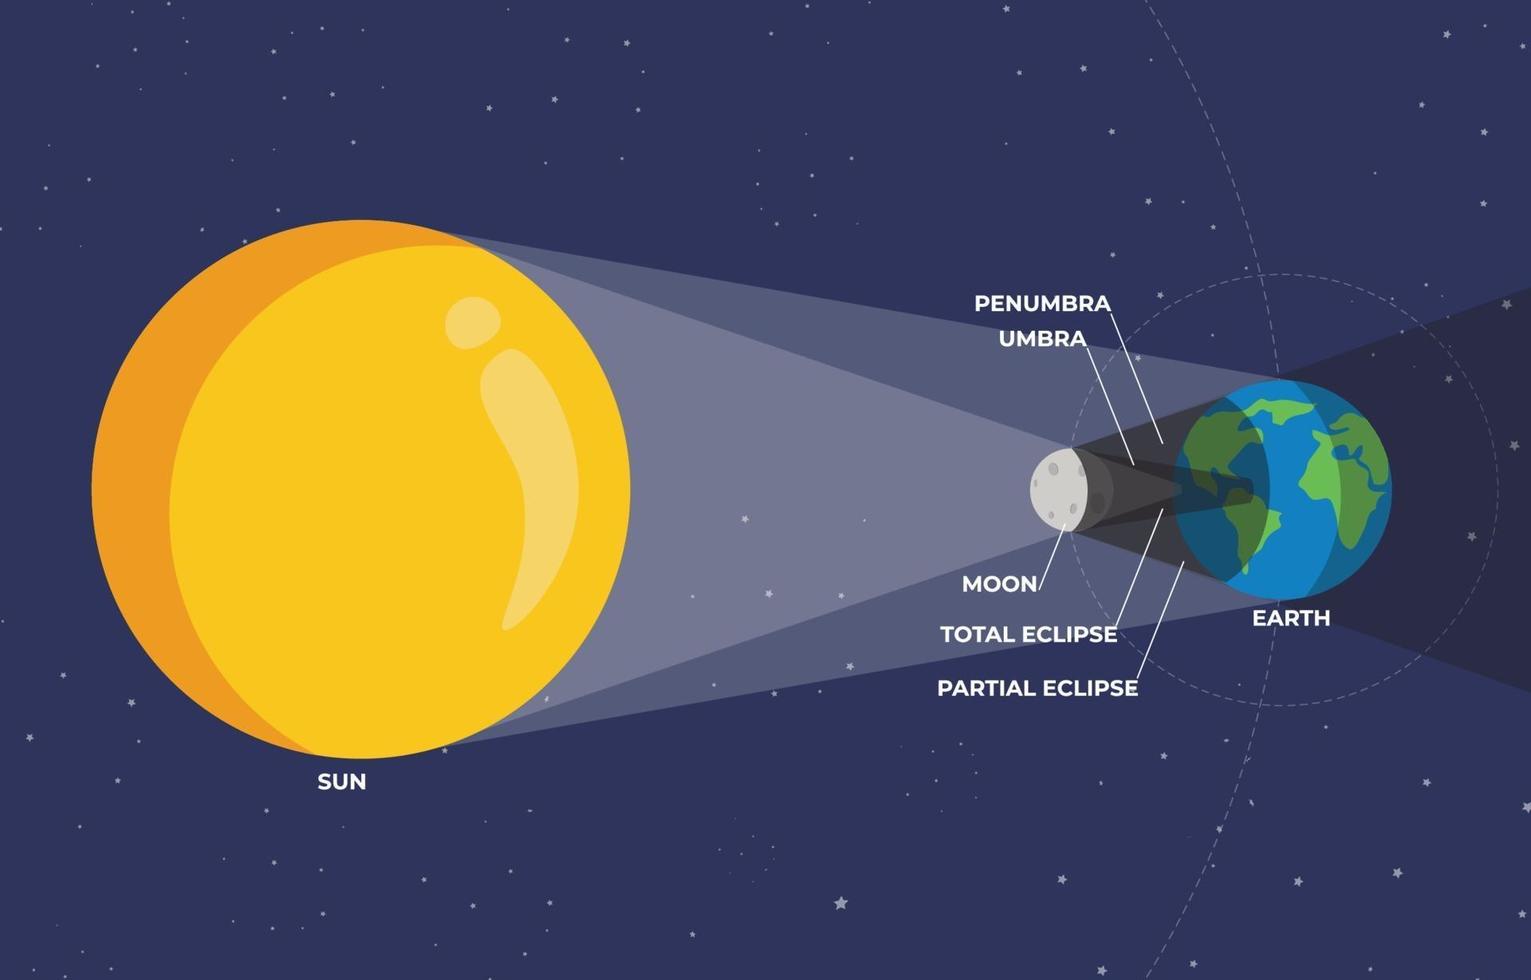 infográfico eclipse solar vetor